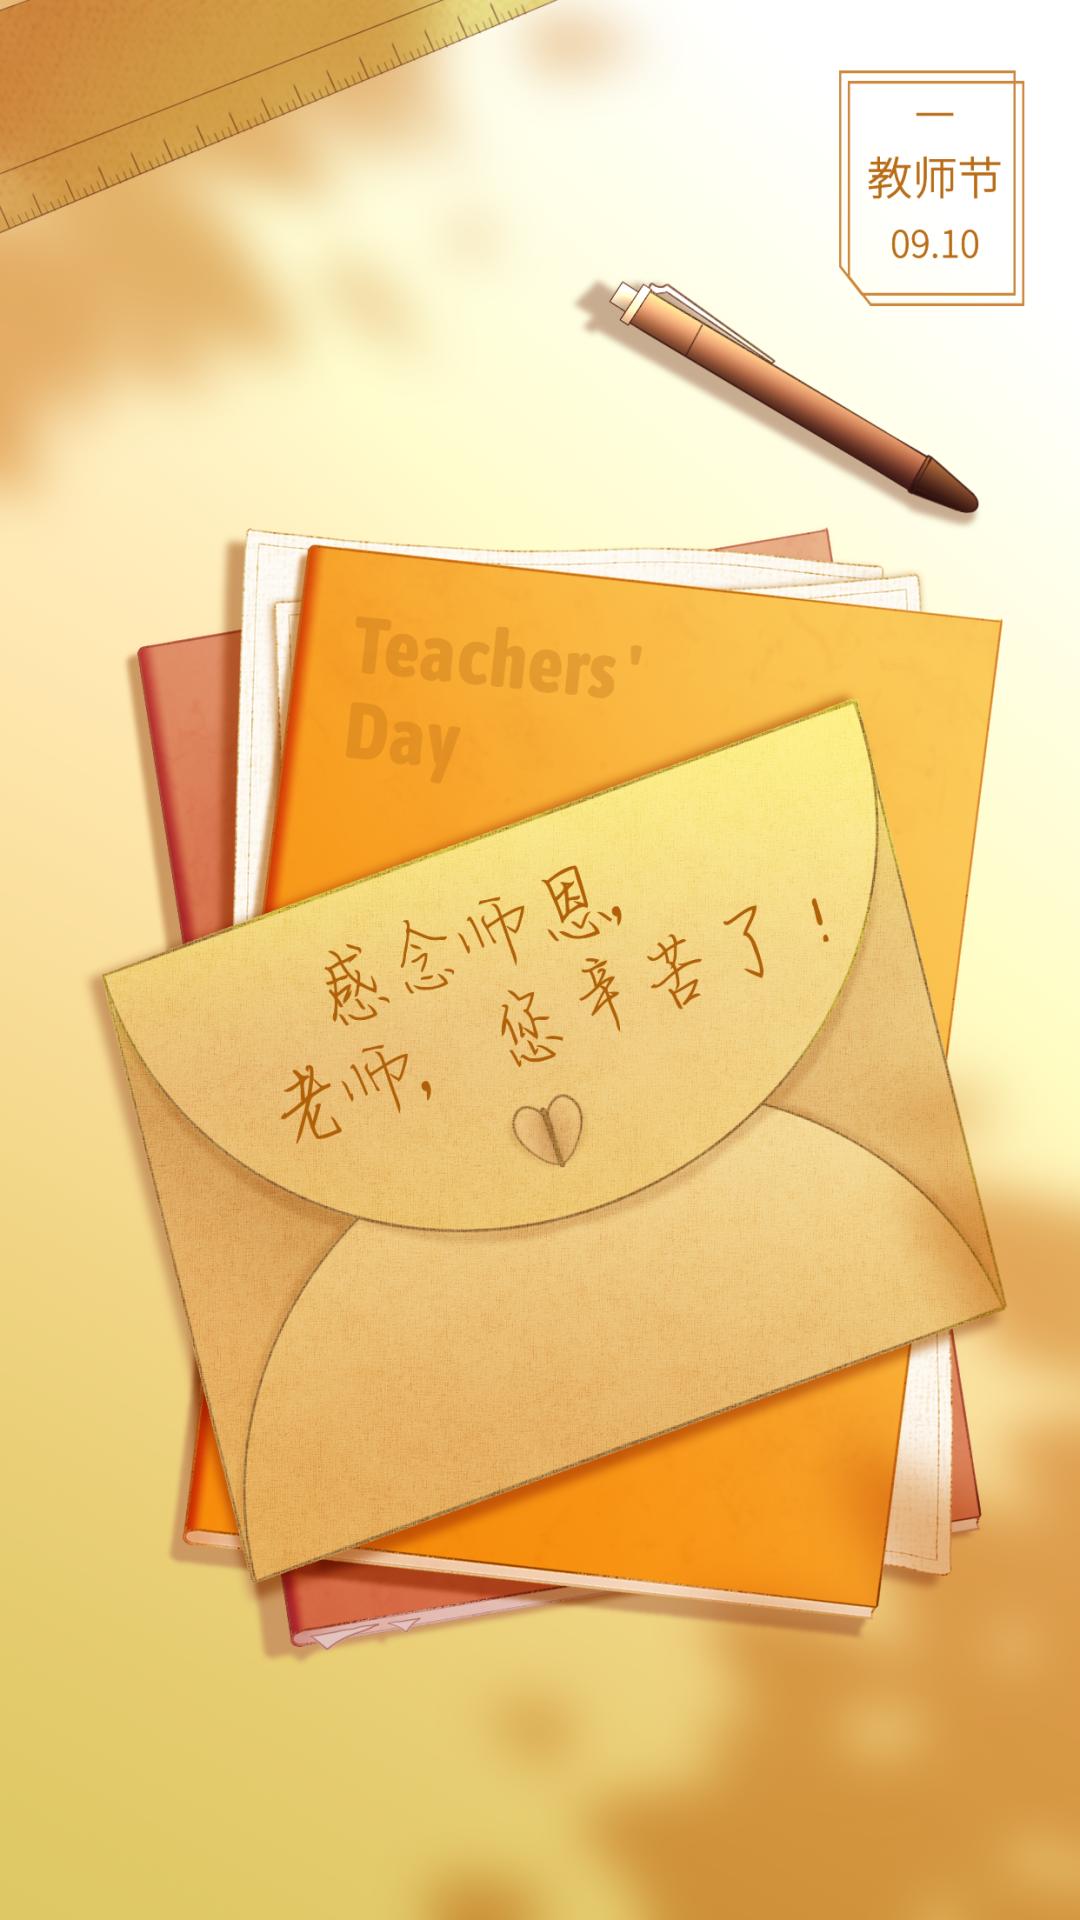 视频教师节他们送出了祝福祝所有的老师节日快乐桃李芬芳